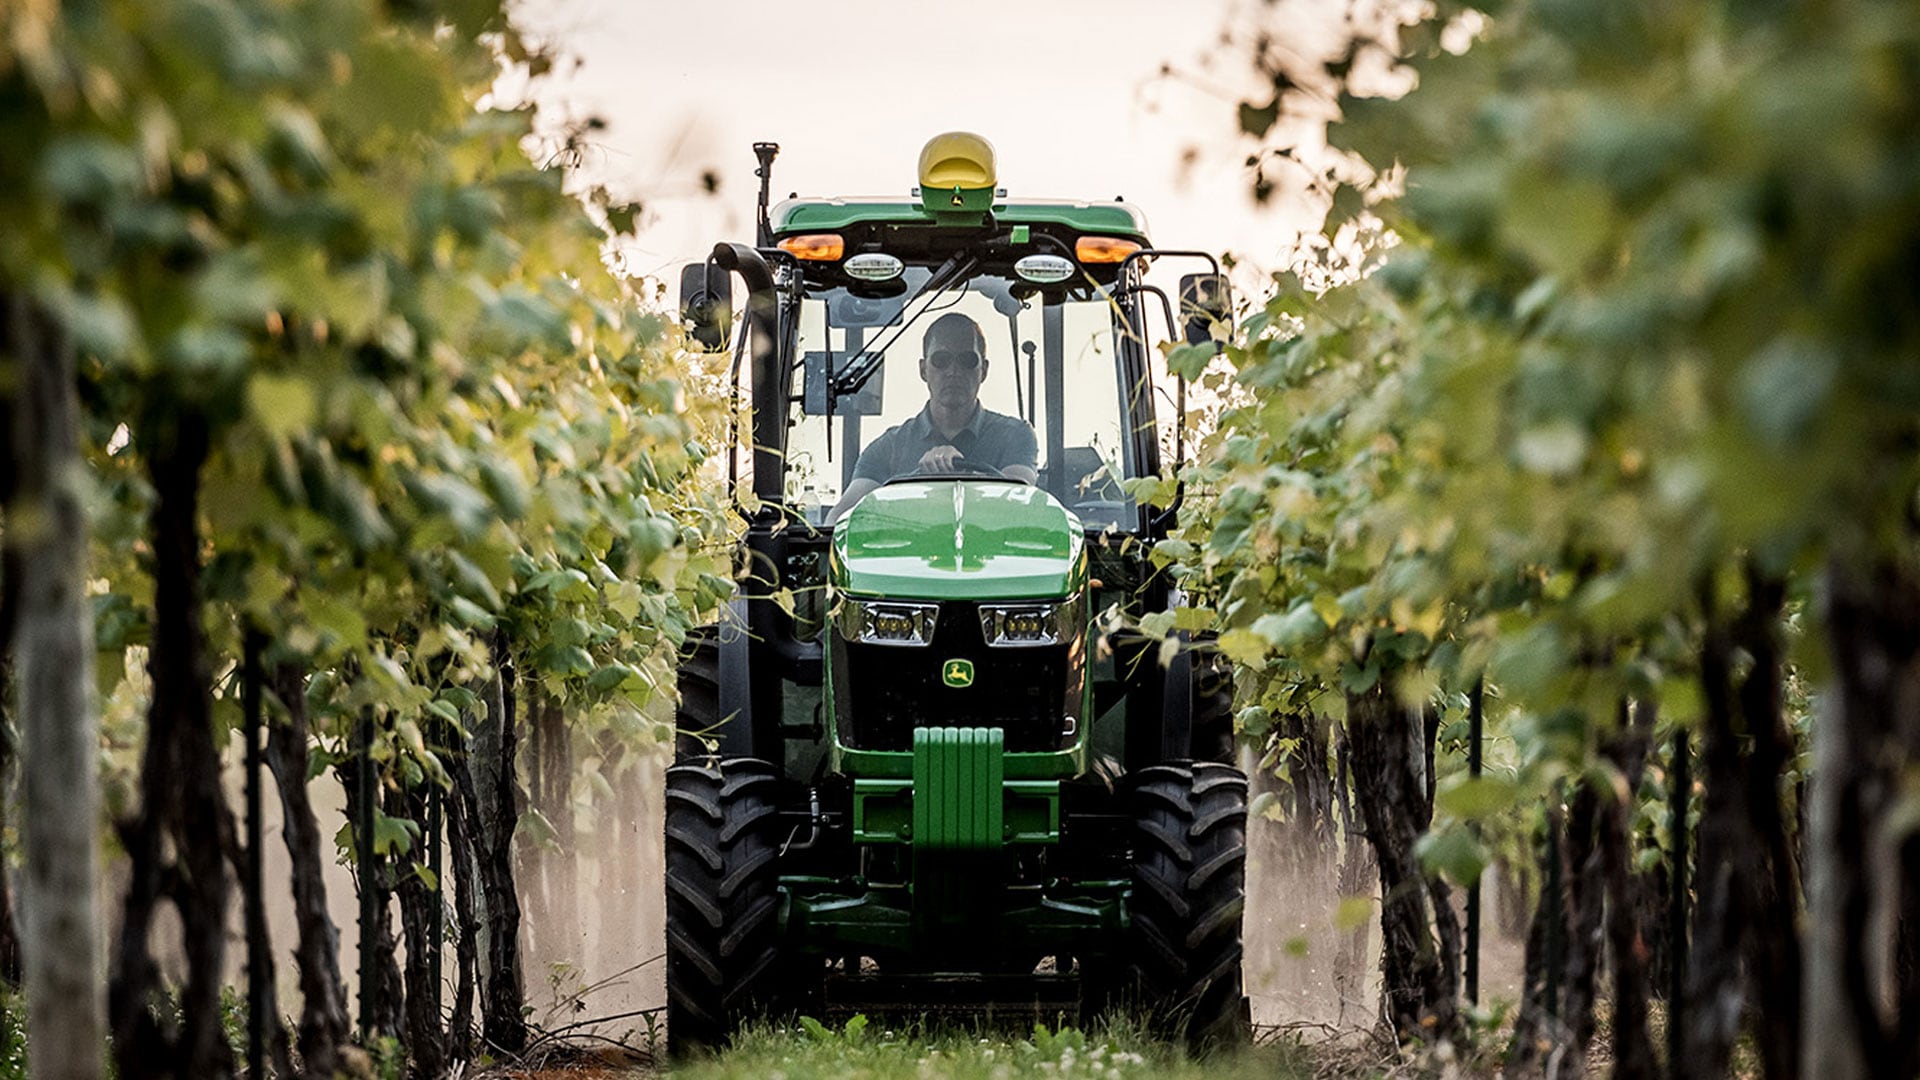 John Deere tractor working in vineyard.